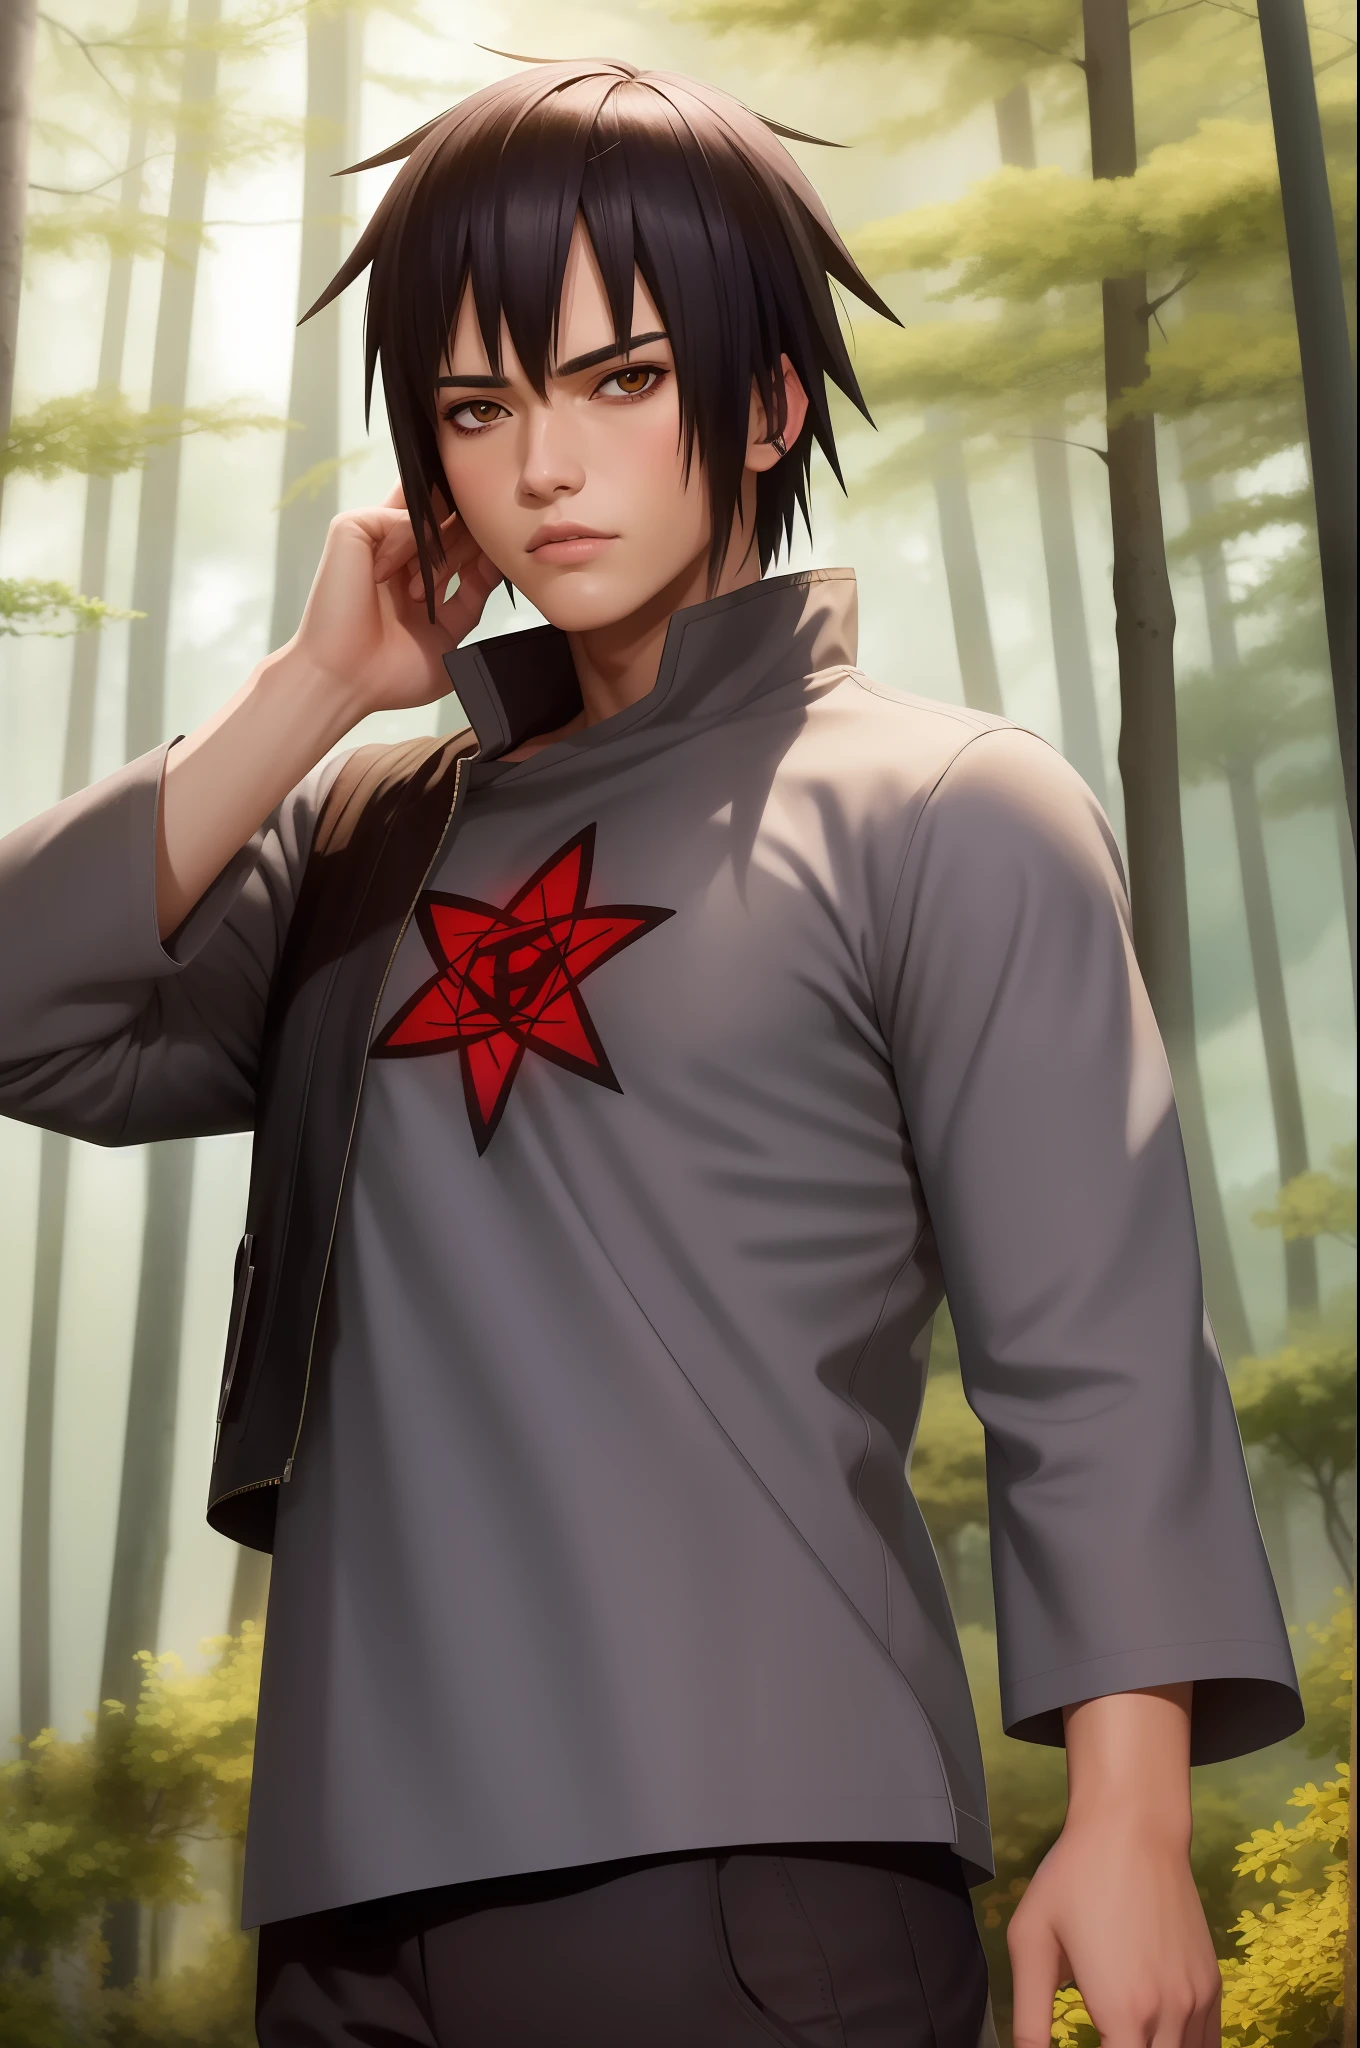 Super realistisches Bild eines neun Zeichen basierend auf dem Amin Naruto. Er sieht sehr gut aus, hat auffällige Augen. dick, dunkle Augenbrauen. weiße Haut. selbstbewusster Blick. braune Augen. Er hält in seiner Hand ein Kunai. Im Hintergrund hinter ihm ist ein schattiger Wald.